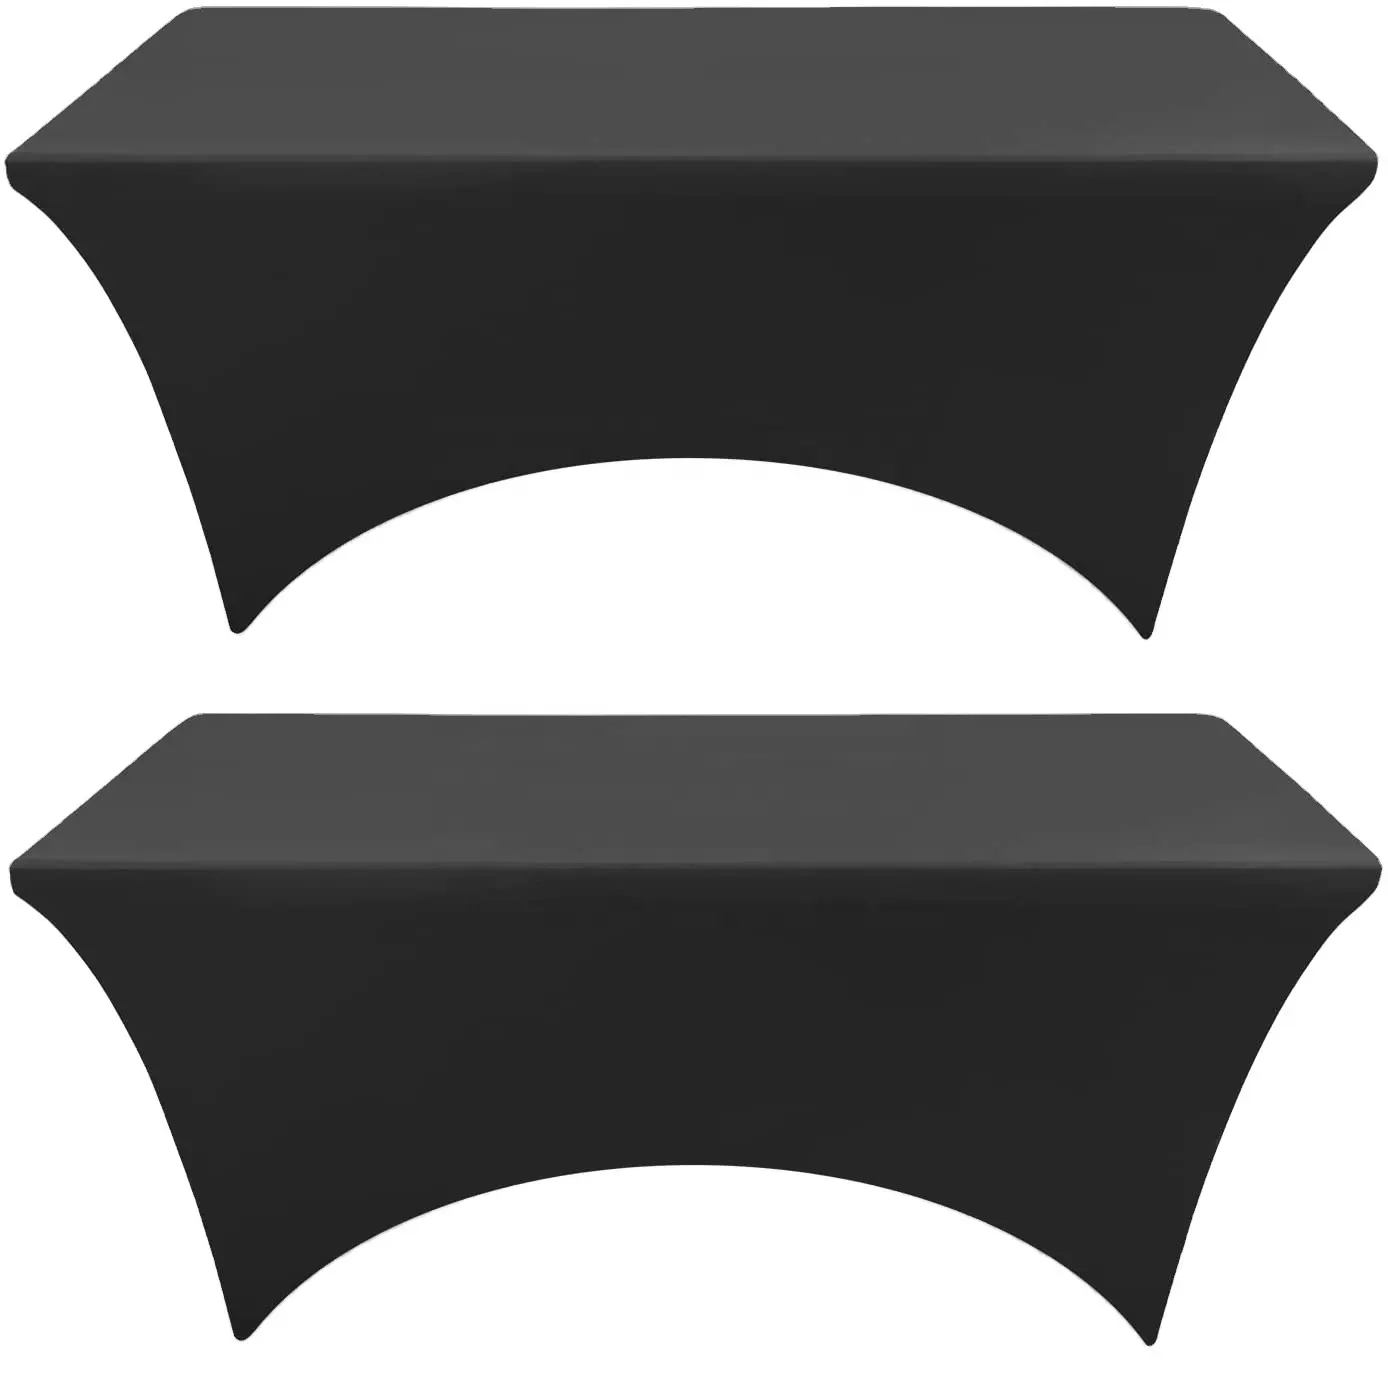 ผ้าสแปนเด็กซ์คลุมโต๊ะสีดำ,ผ้าปูโต๊ะเข้ารูปสำหรับโต๊ะสี่เหลี่ยมผืนผ้า4ฟุตผ้าคลุมโต๊ะนวดยืดหยุ่นผ้าปูโต๊ะยืด